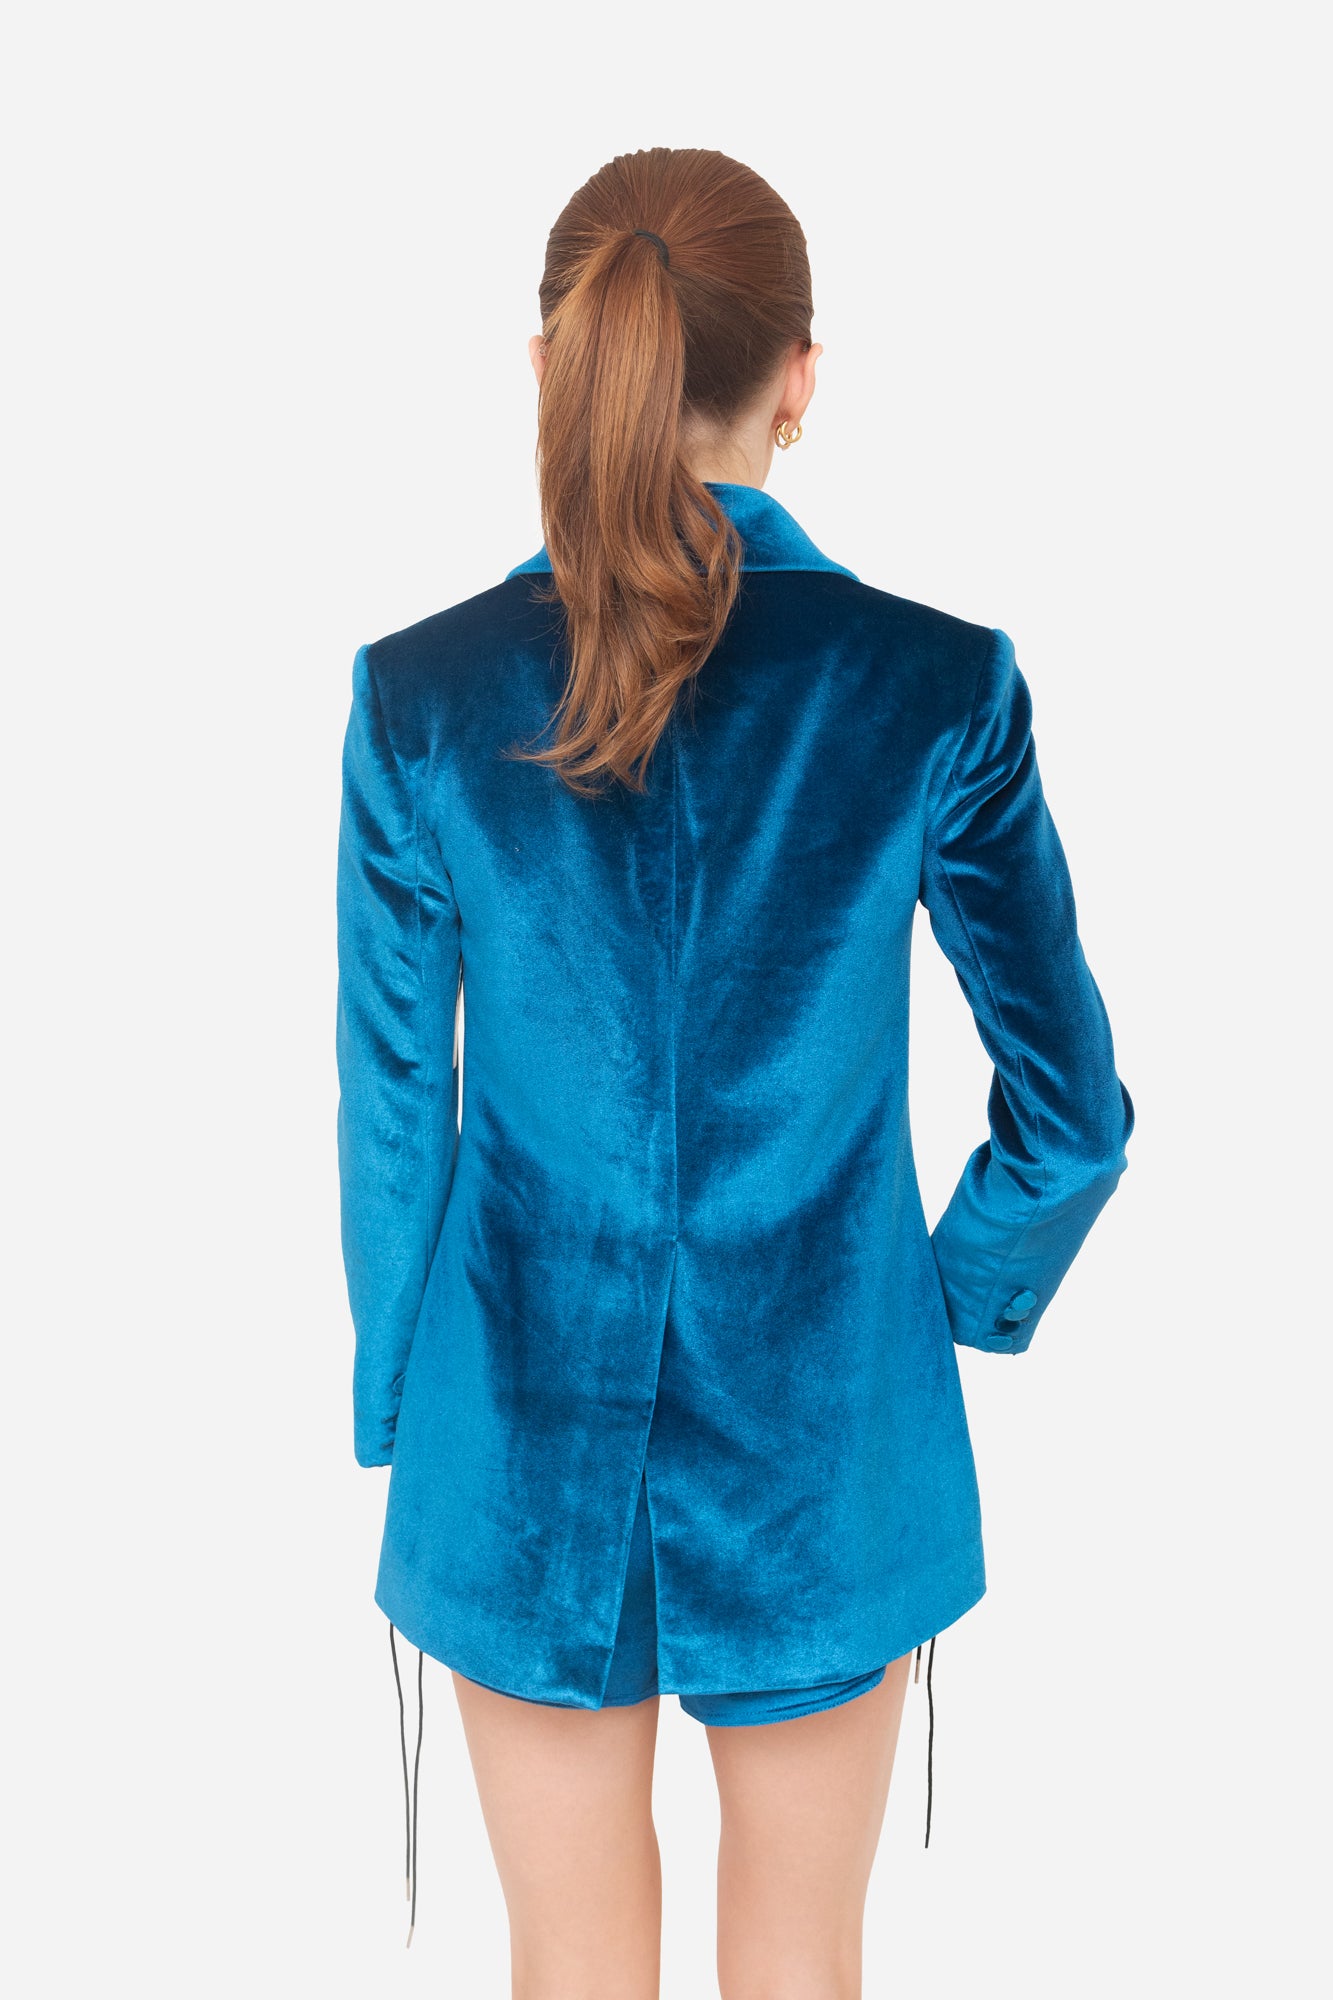 Peacock Blue Velvet Blazer + Shorts